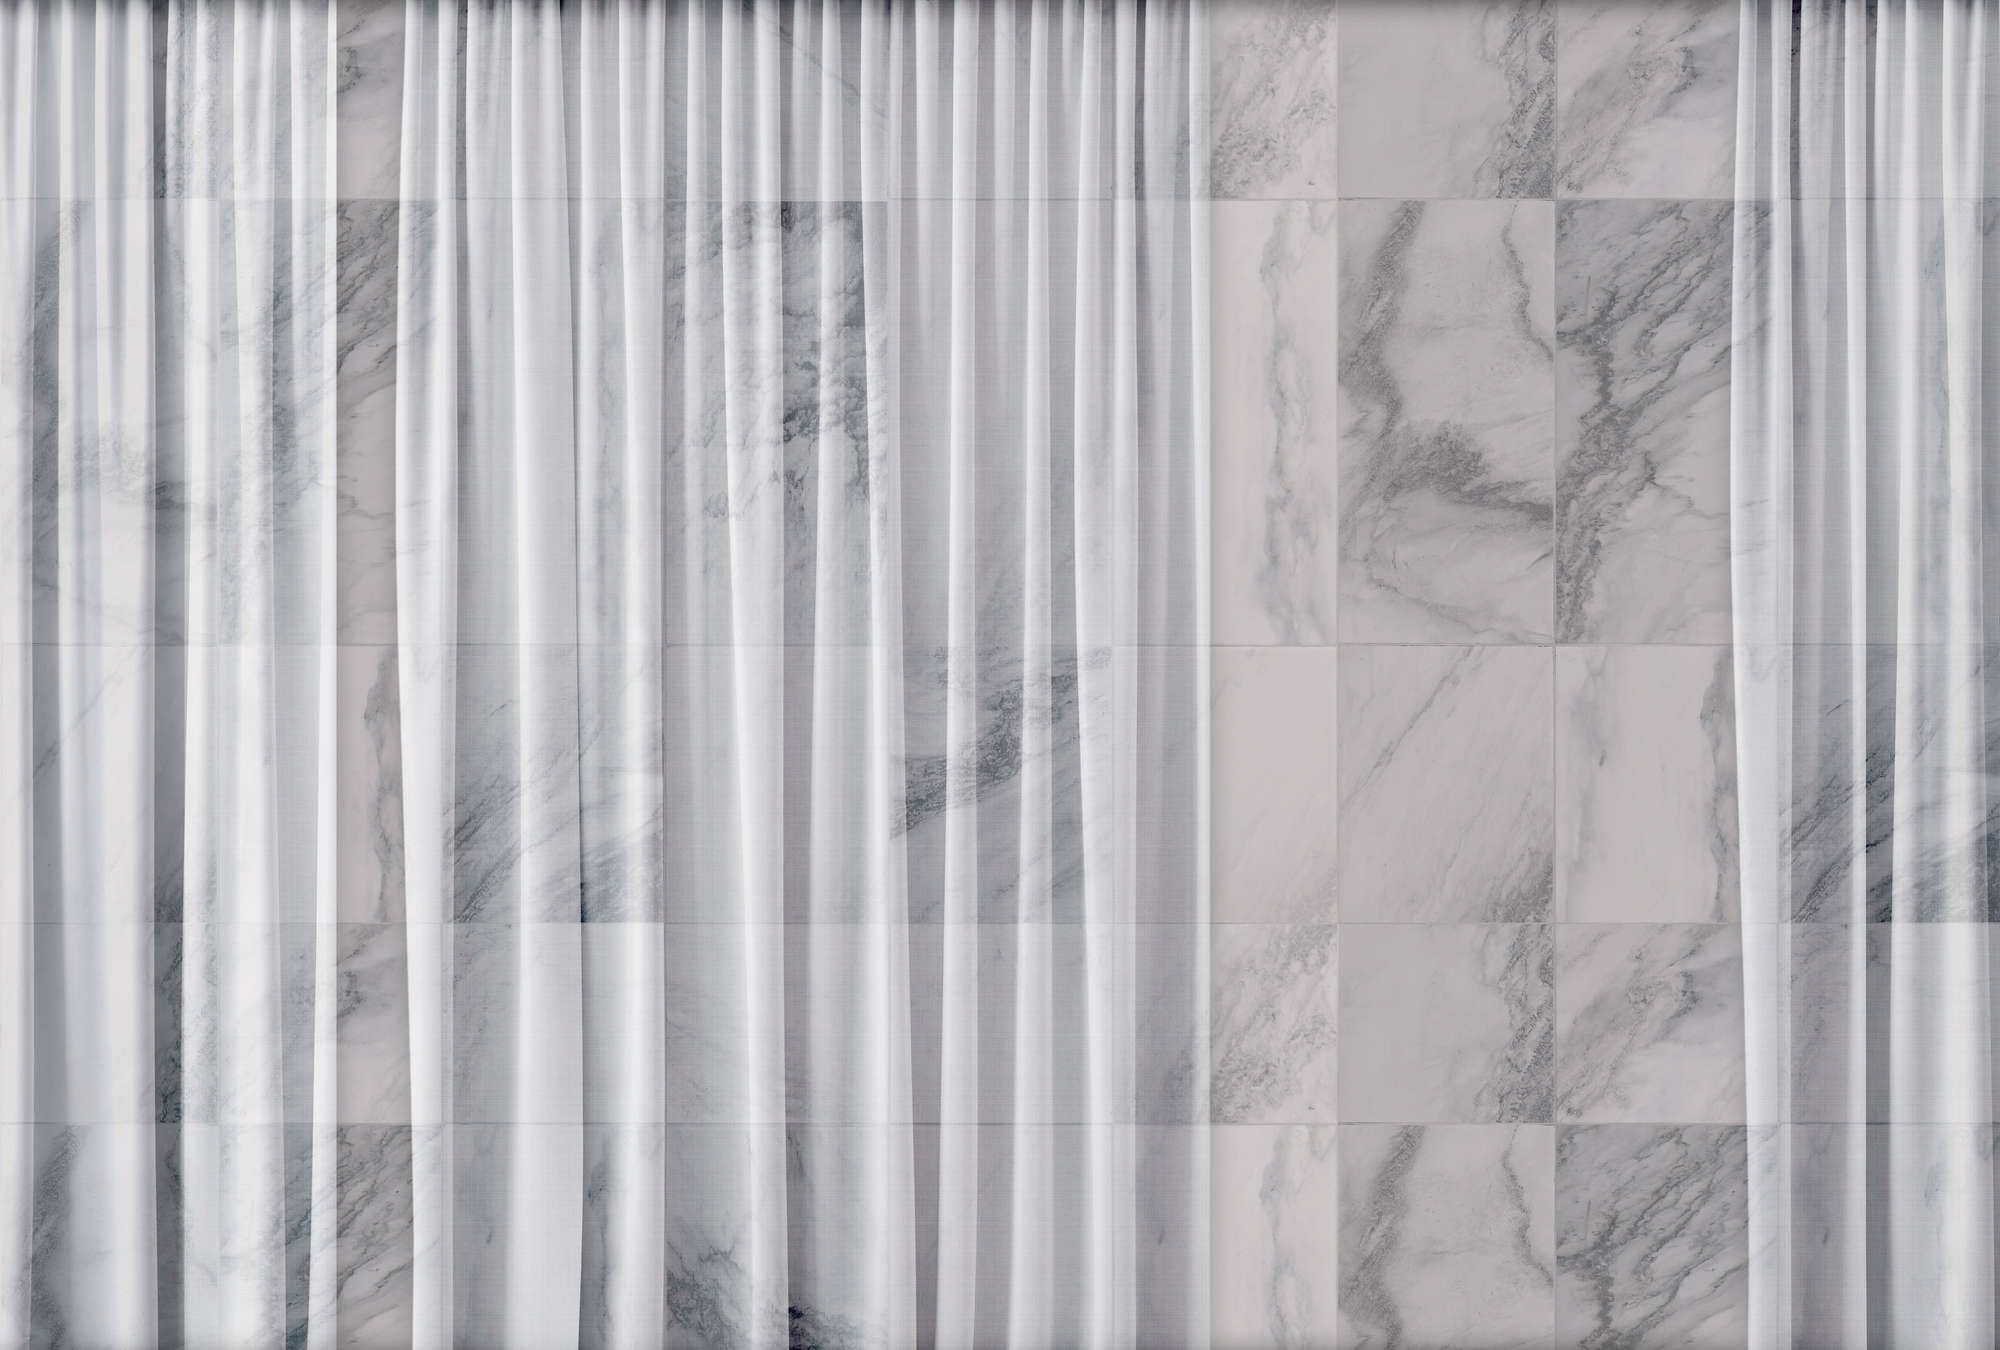             Digital behang »nova 1« - Subtiel vallend wit gordijn voor een marmeren muur - Licht gestructureerde vliesstof
        